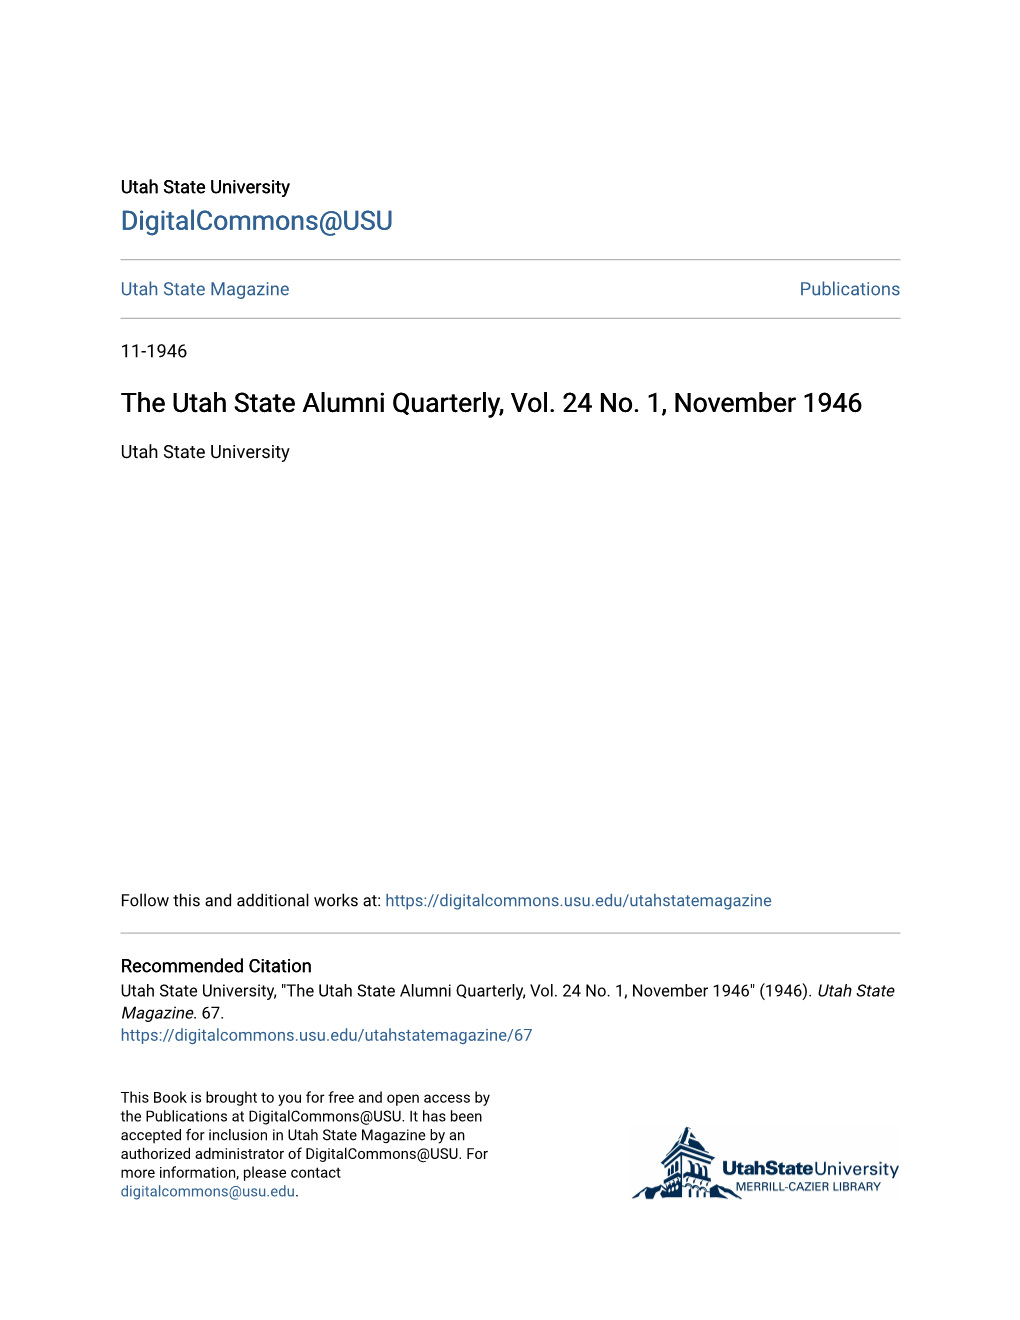 The Utah State Alumni Quarterly, Vol. 24 No. 1, November 1946